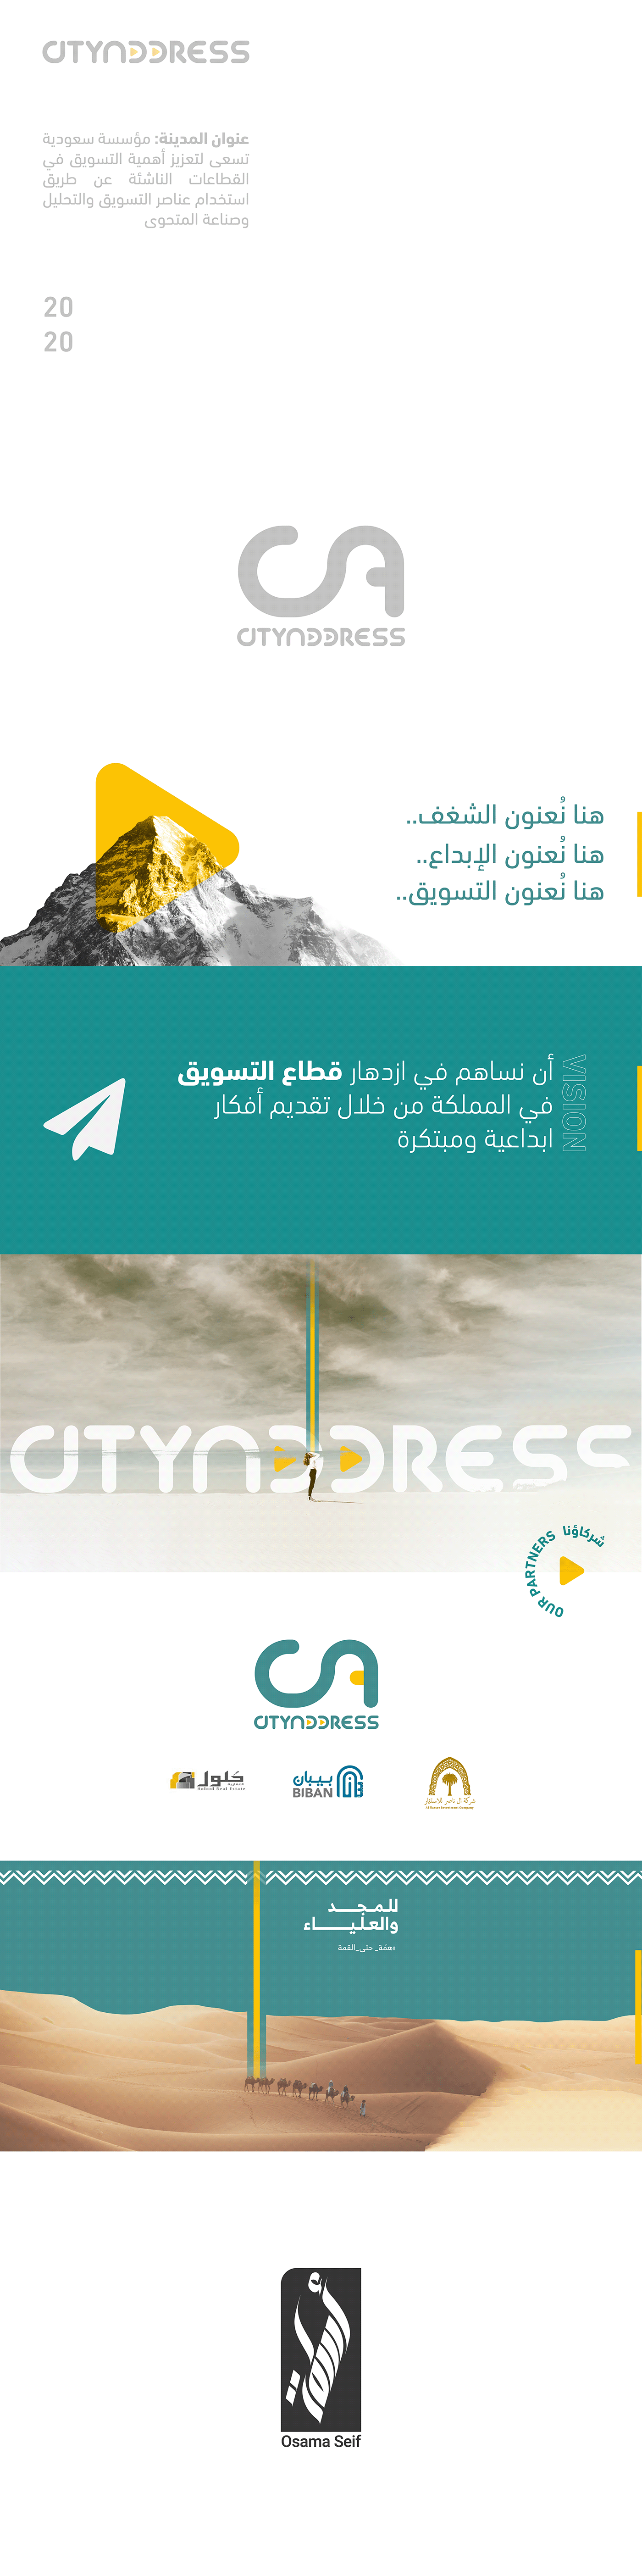 address AlMadinah art city data analysis identity logo marketing   Saudia Arabia social media